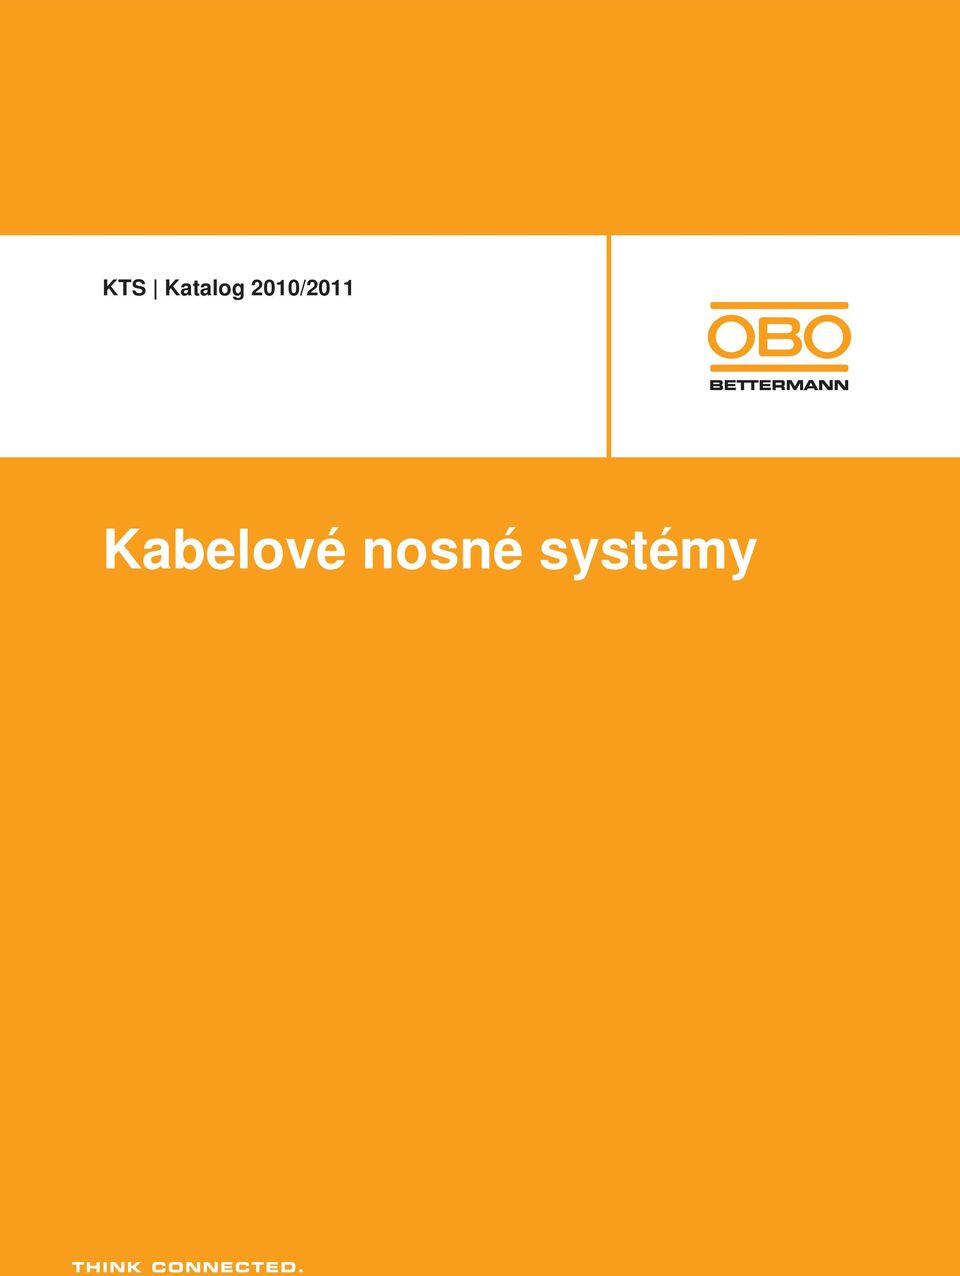 KTS Katalog 2010/2011. Kabelové nosné systémy - PDF Stažení zdarma